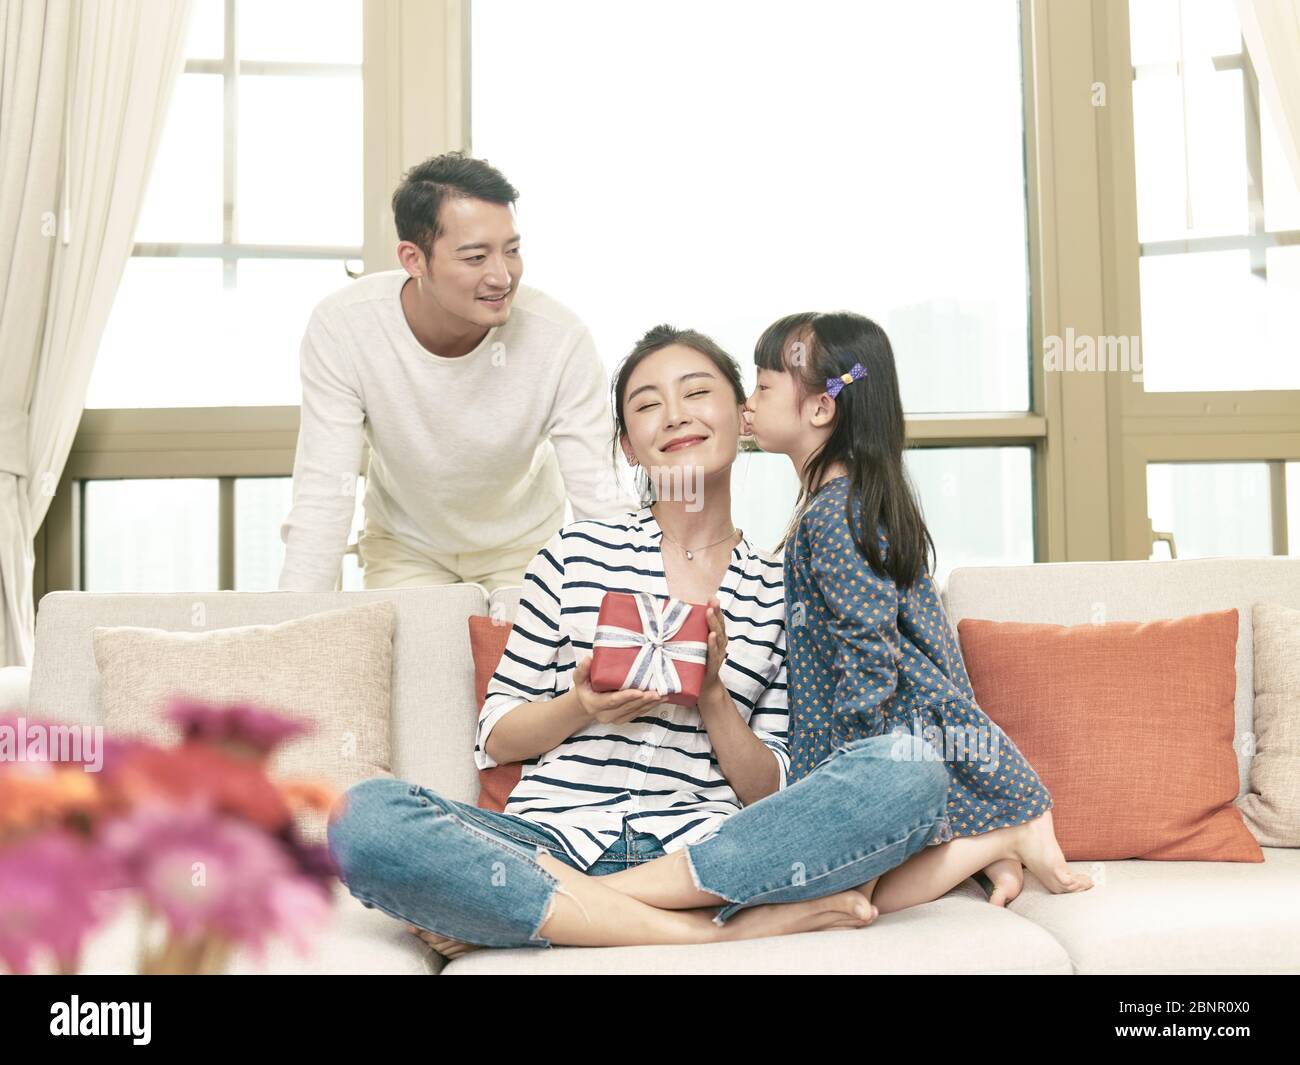 piccola figlia gilr asiatica che bacia la madre sulla guancia dopo aver regalato un regalo Foto Stock